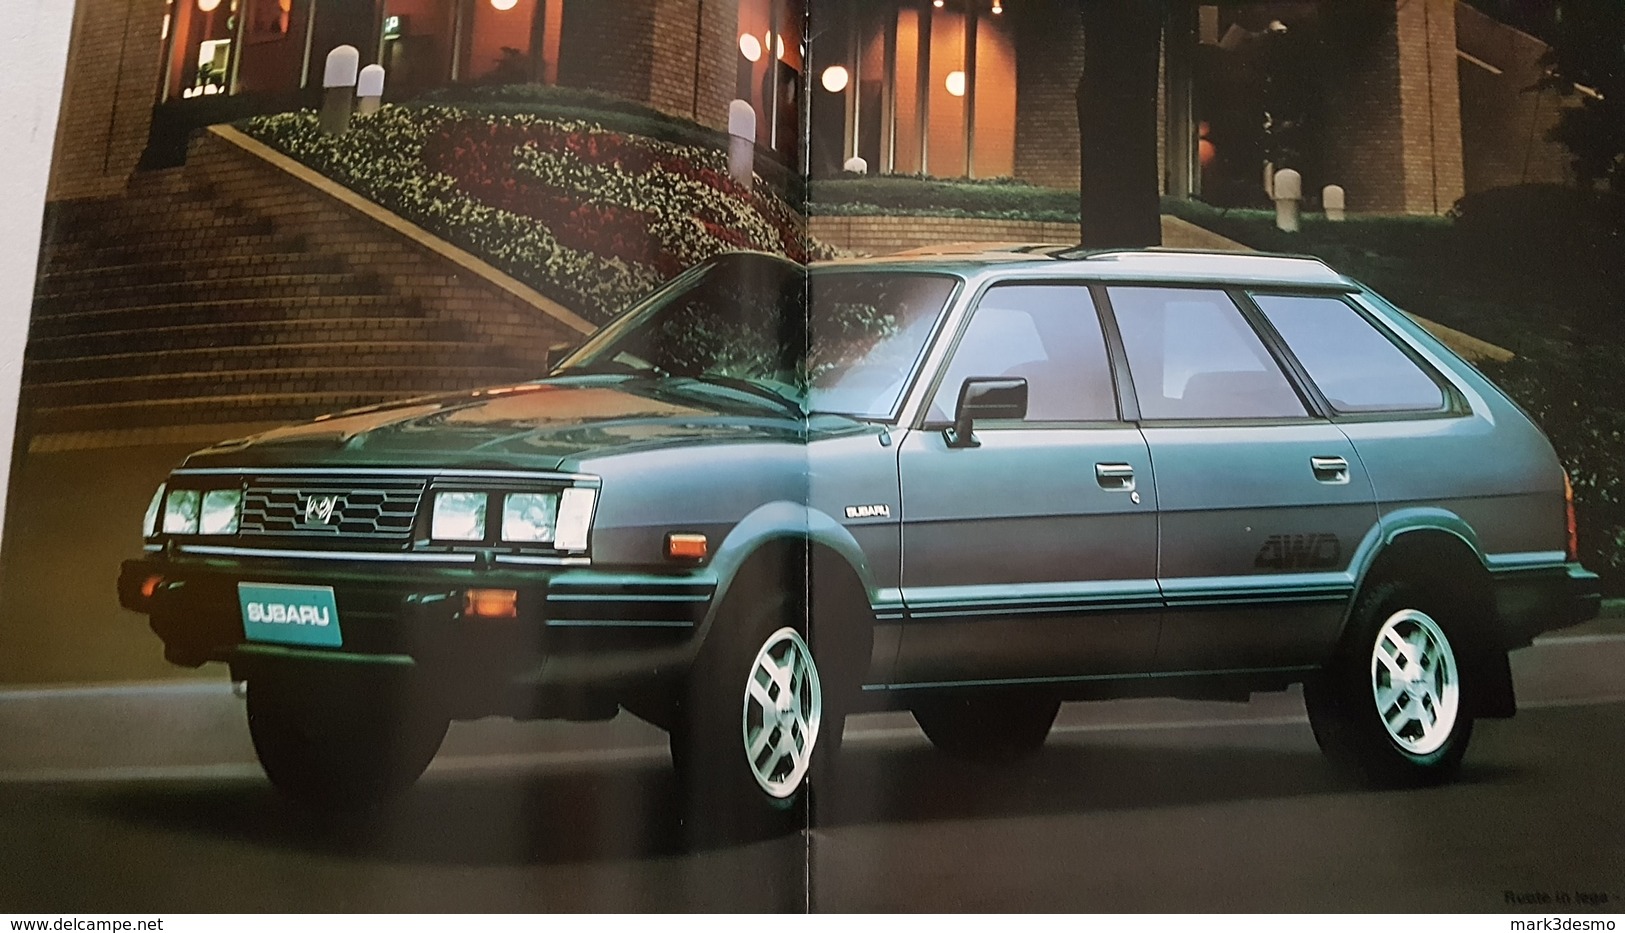 Subaru 4WD gamma modelli auto 1988 depliant originale auto - genuine car brochure